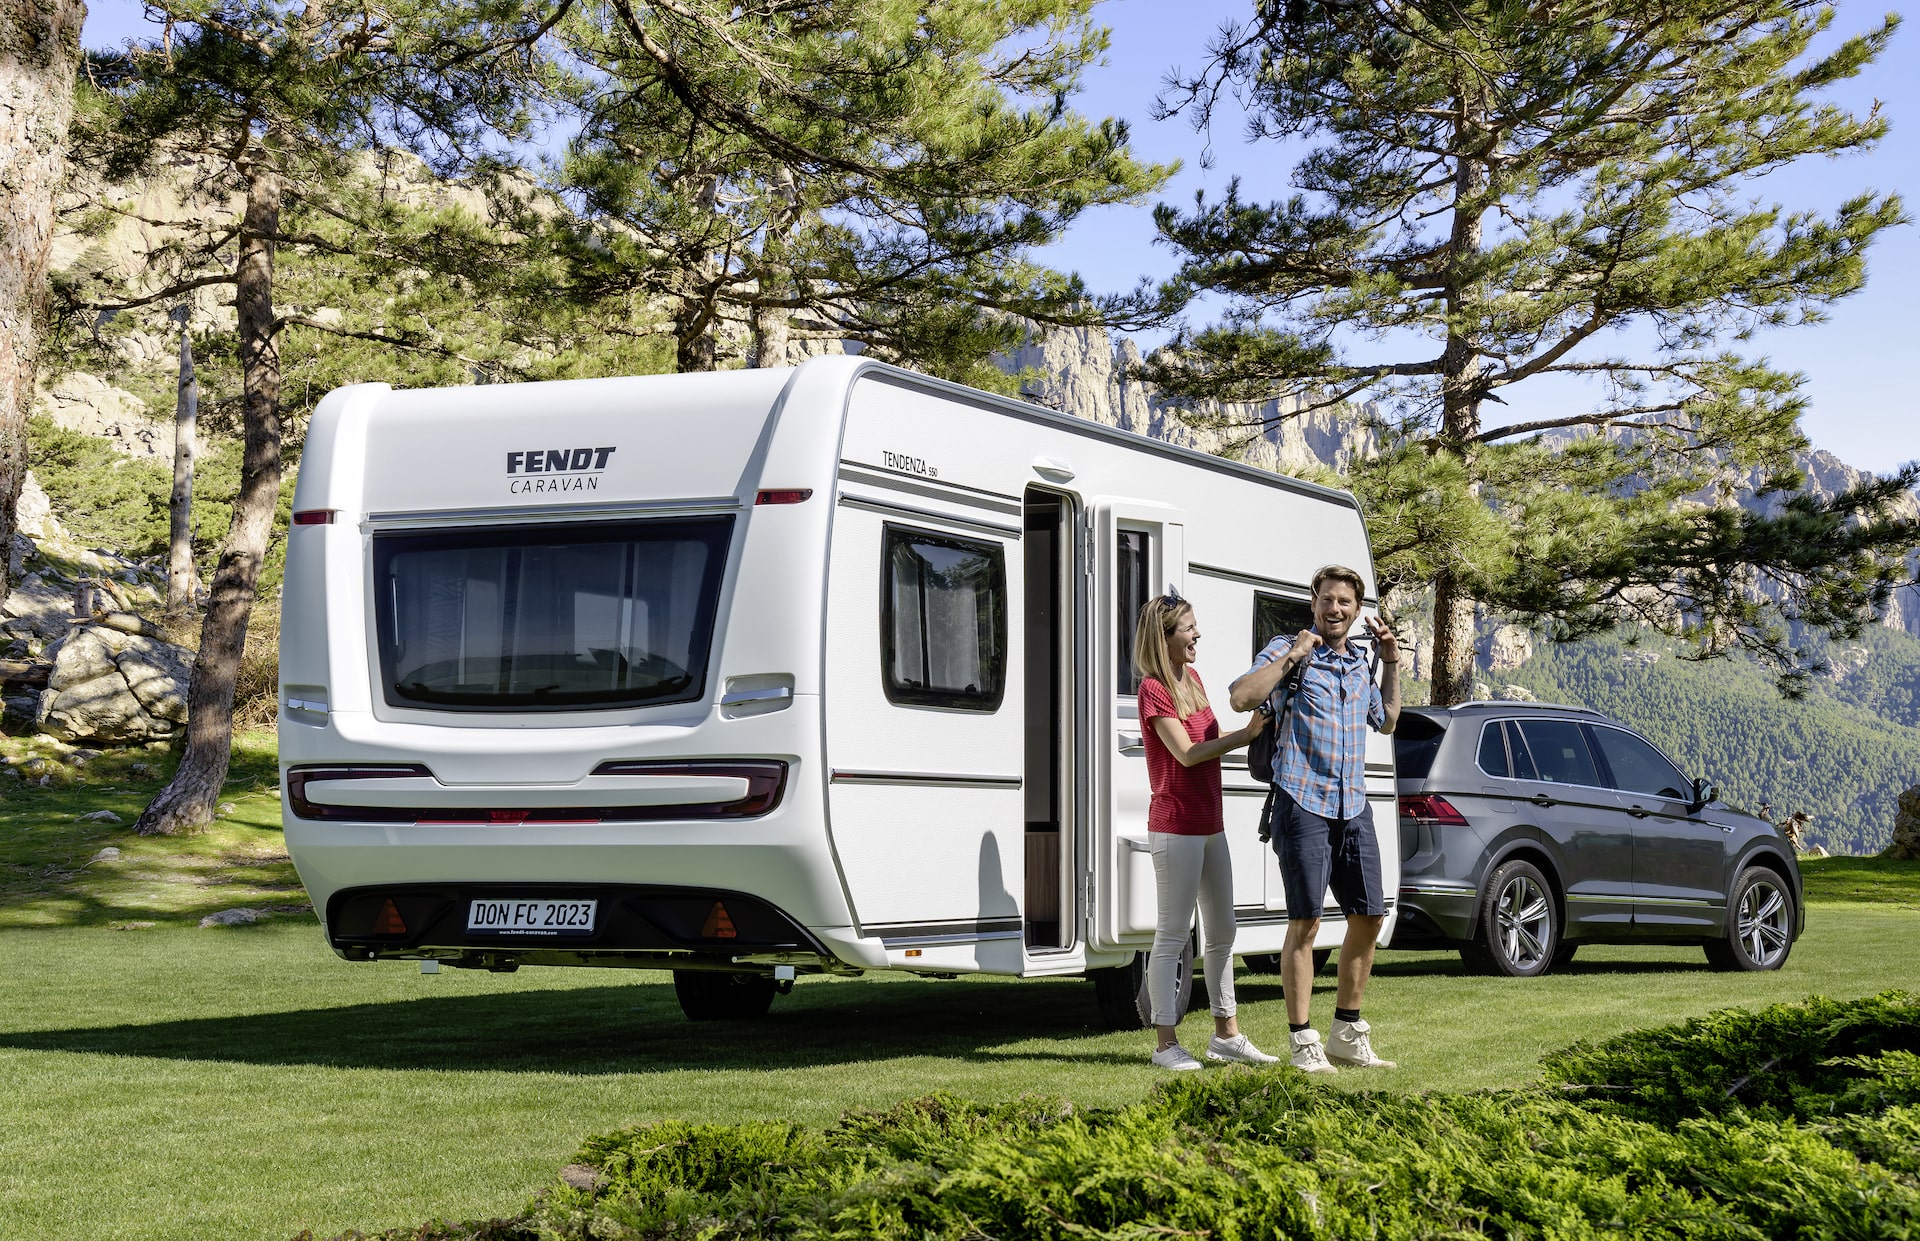 Fendt campingvogne er Tysk luksus kvalitet. Her ses en Fendt Tendenza 2023